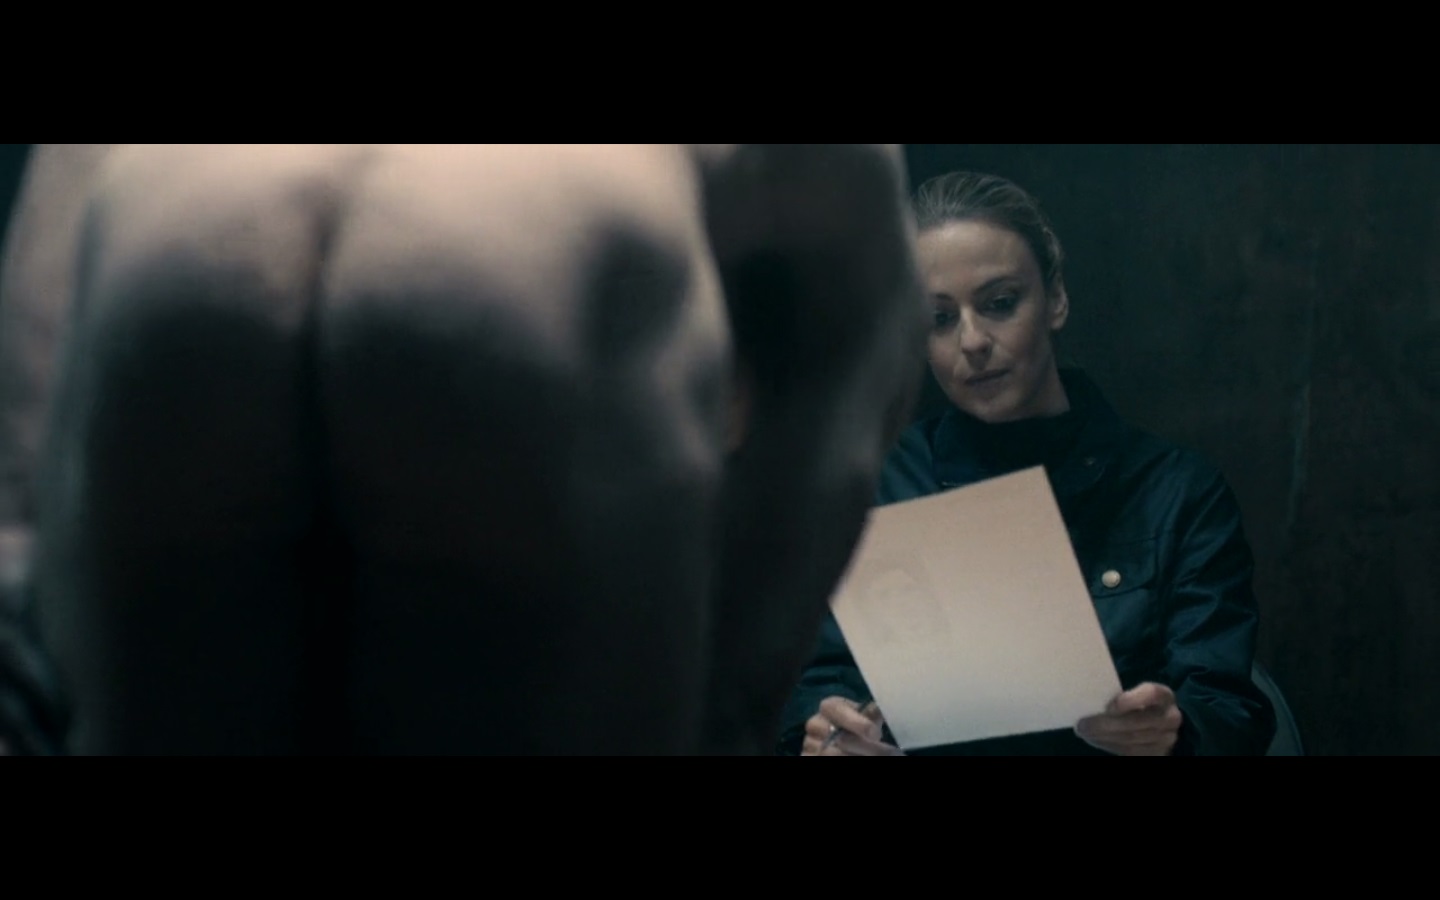 EvilTwin's Male Film & TV Screencaps 2: I am Soldier - Tom Hughes.